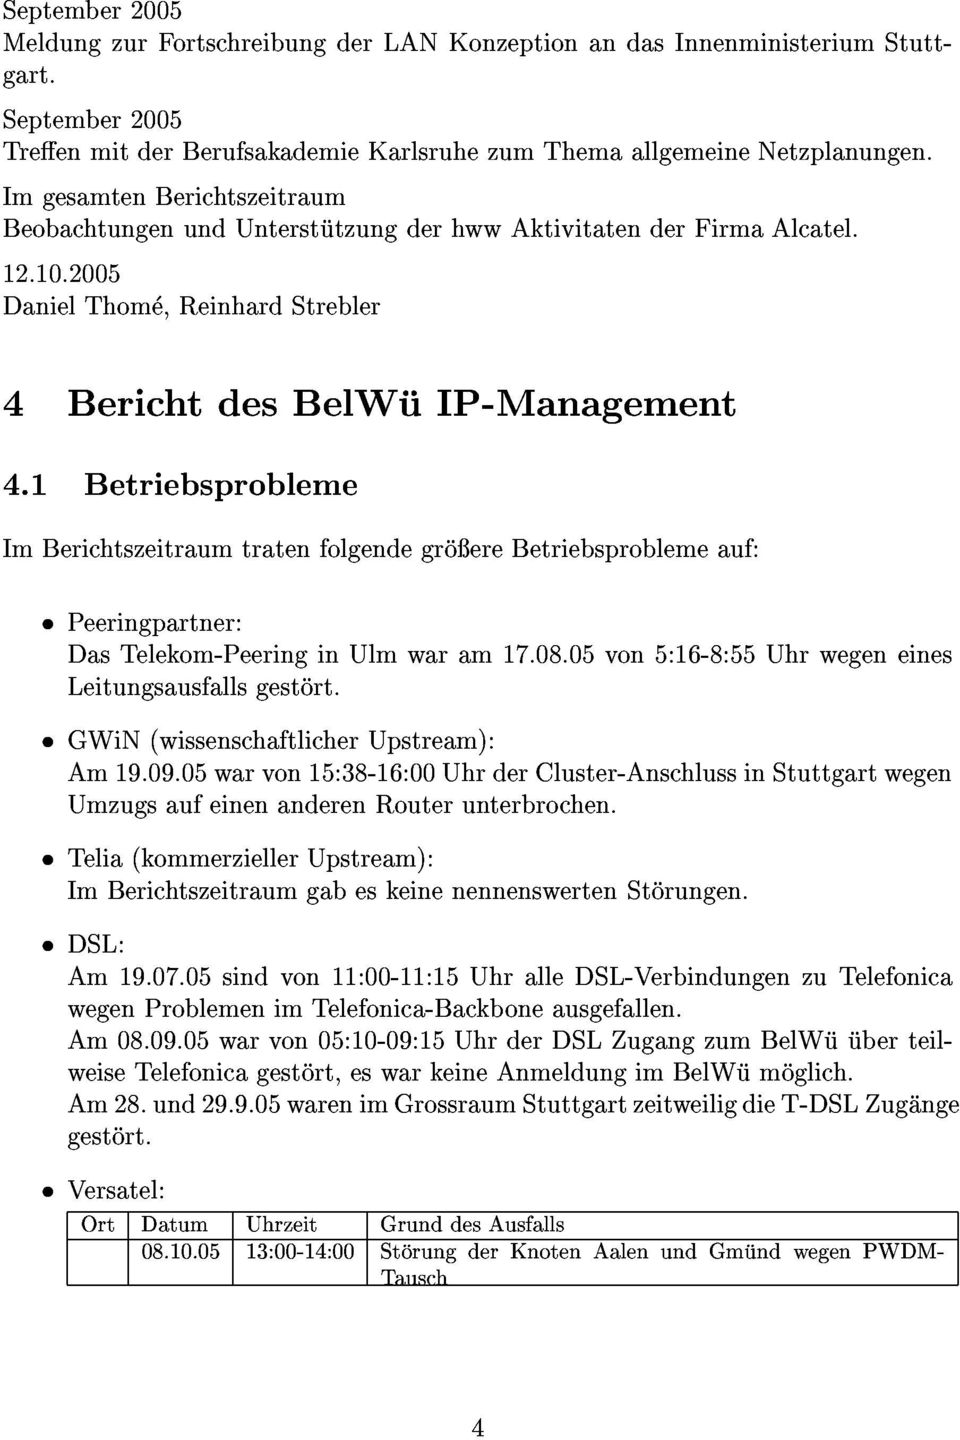 1 4 BerichtdesBelWuIP-Management ImBerichtszeitraumtratenfolgendegroereBetriebsproblemeauf: Betriebsprobleme Peeringpartner: GWiN(wissenschaftlicherUpstream): DasTelekom-PeeringinUlmwaram17.08.